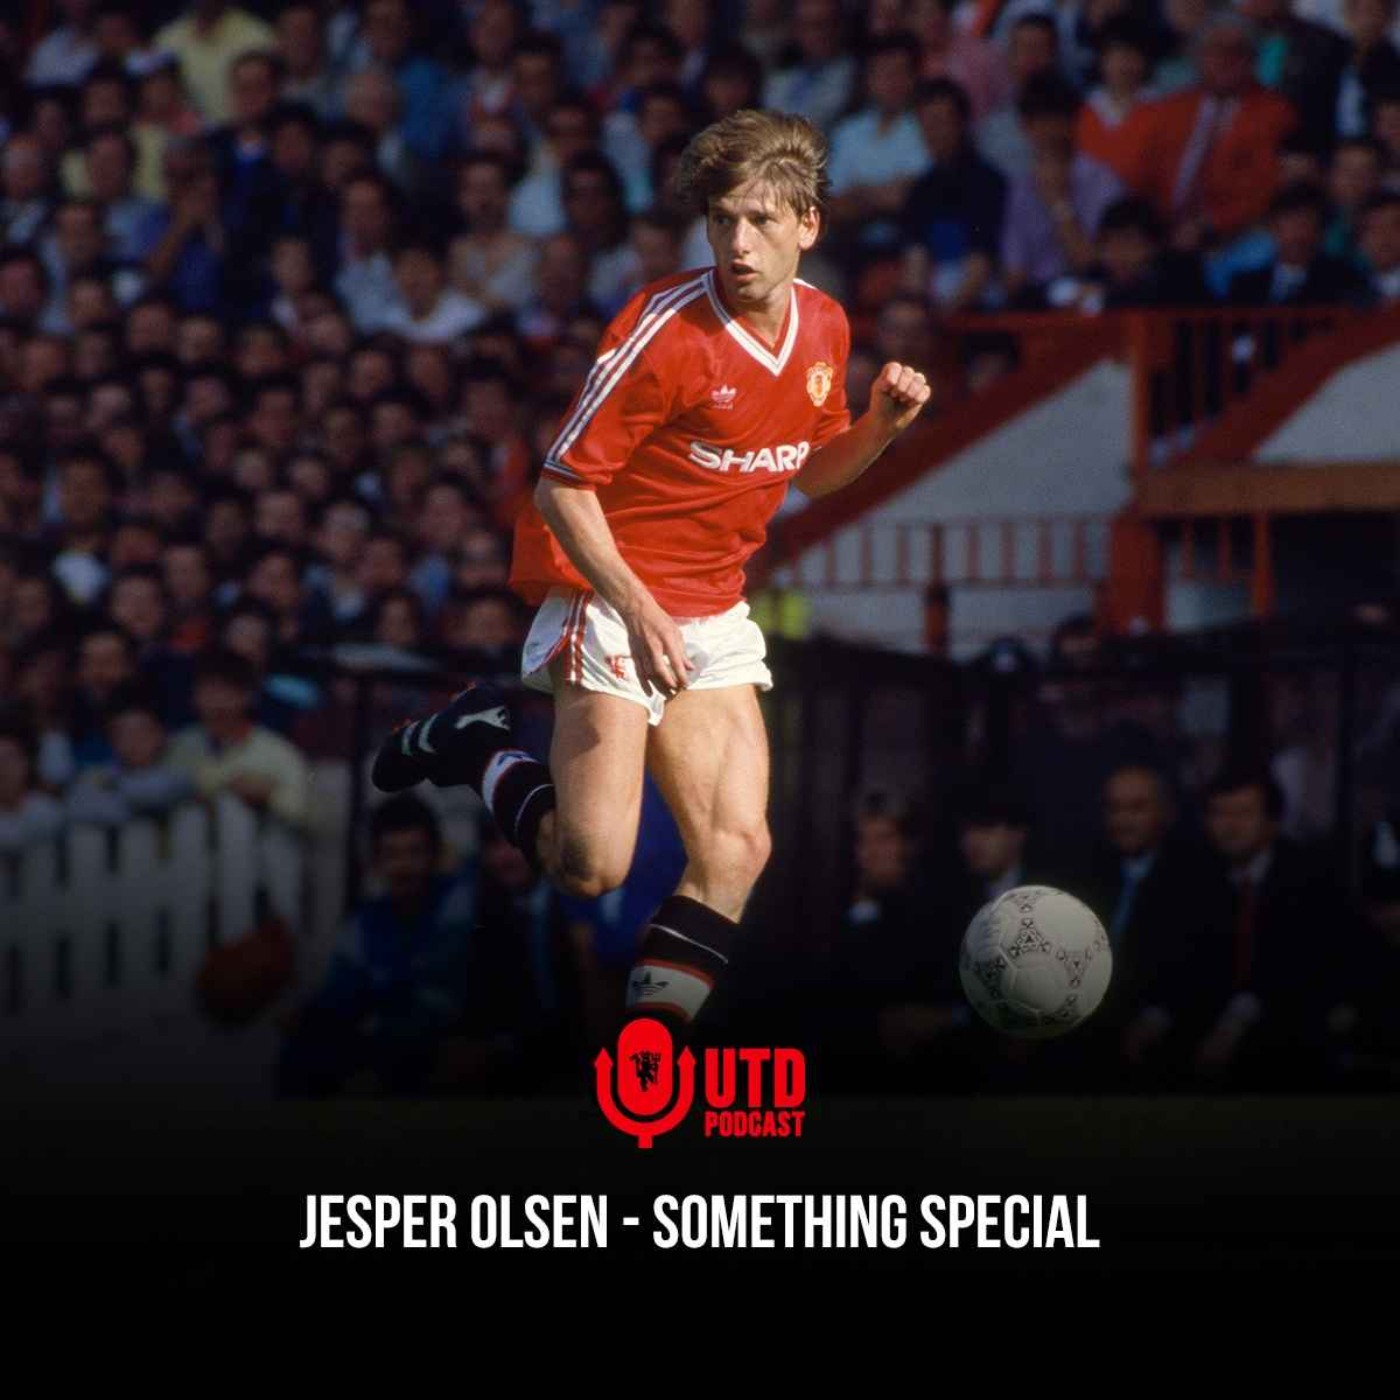 Jesper Olsen - "Something special"